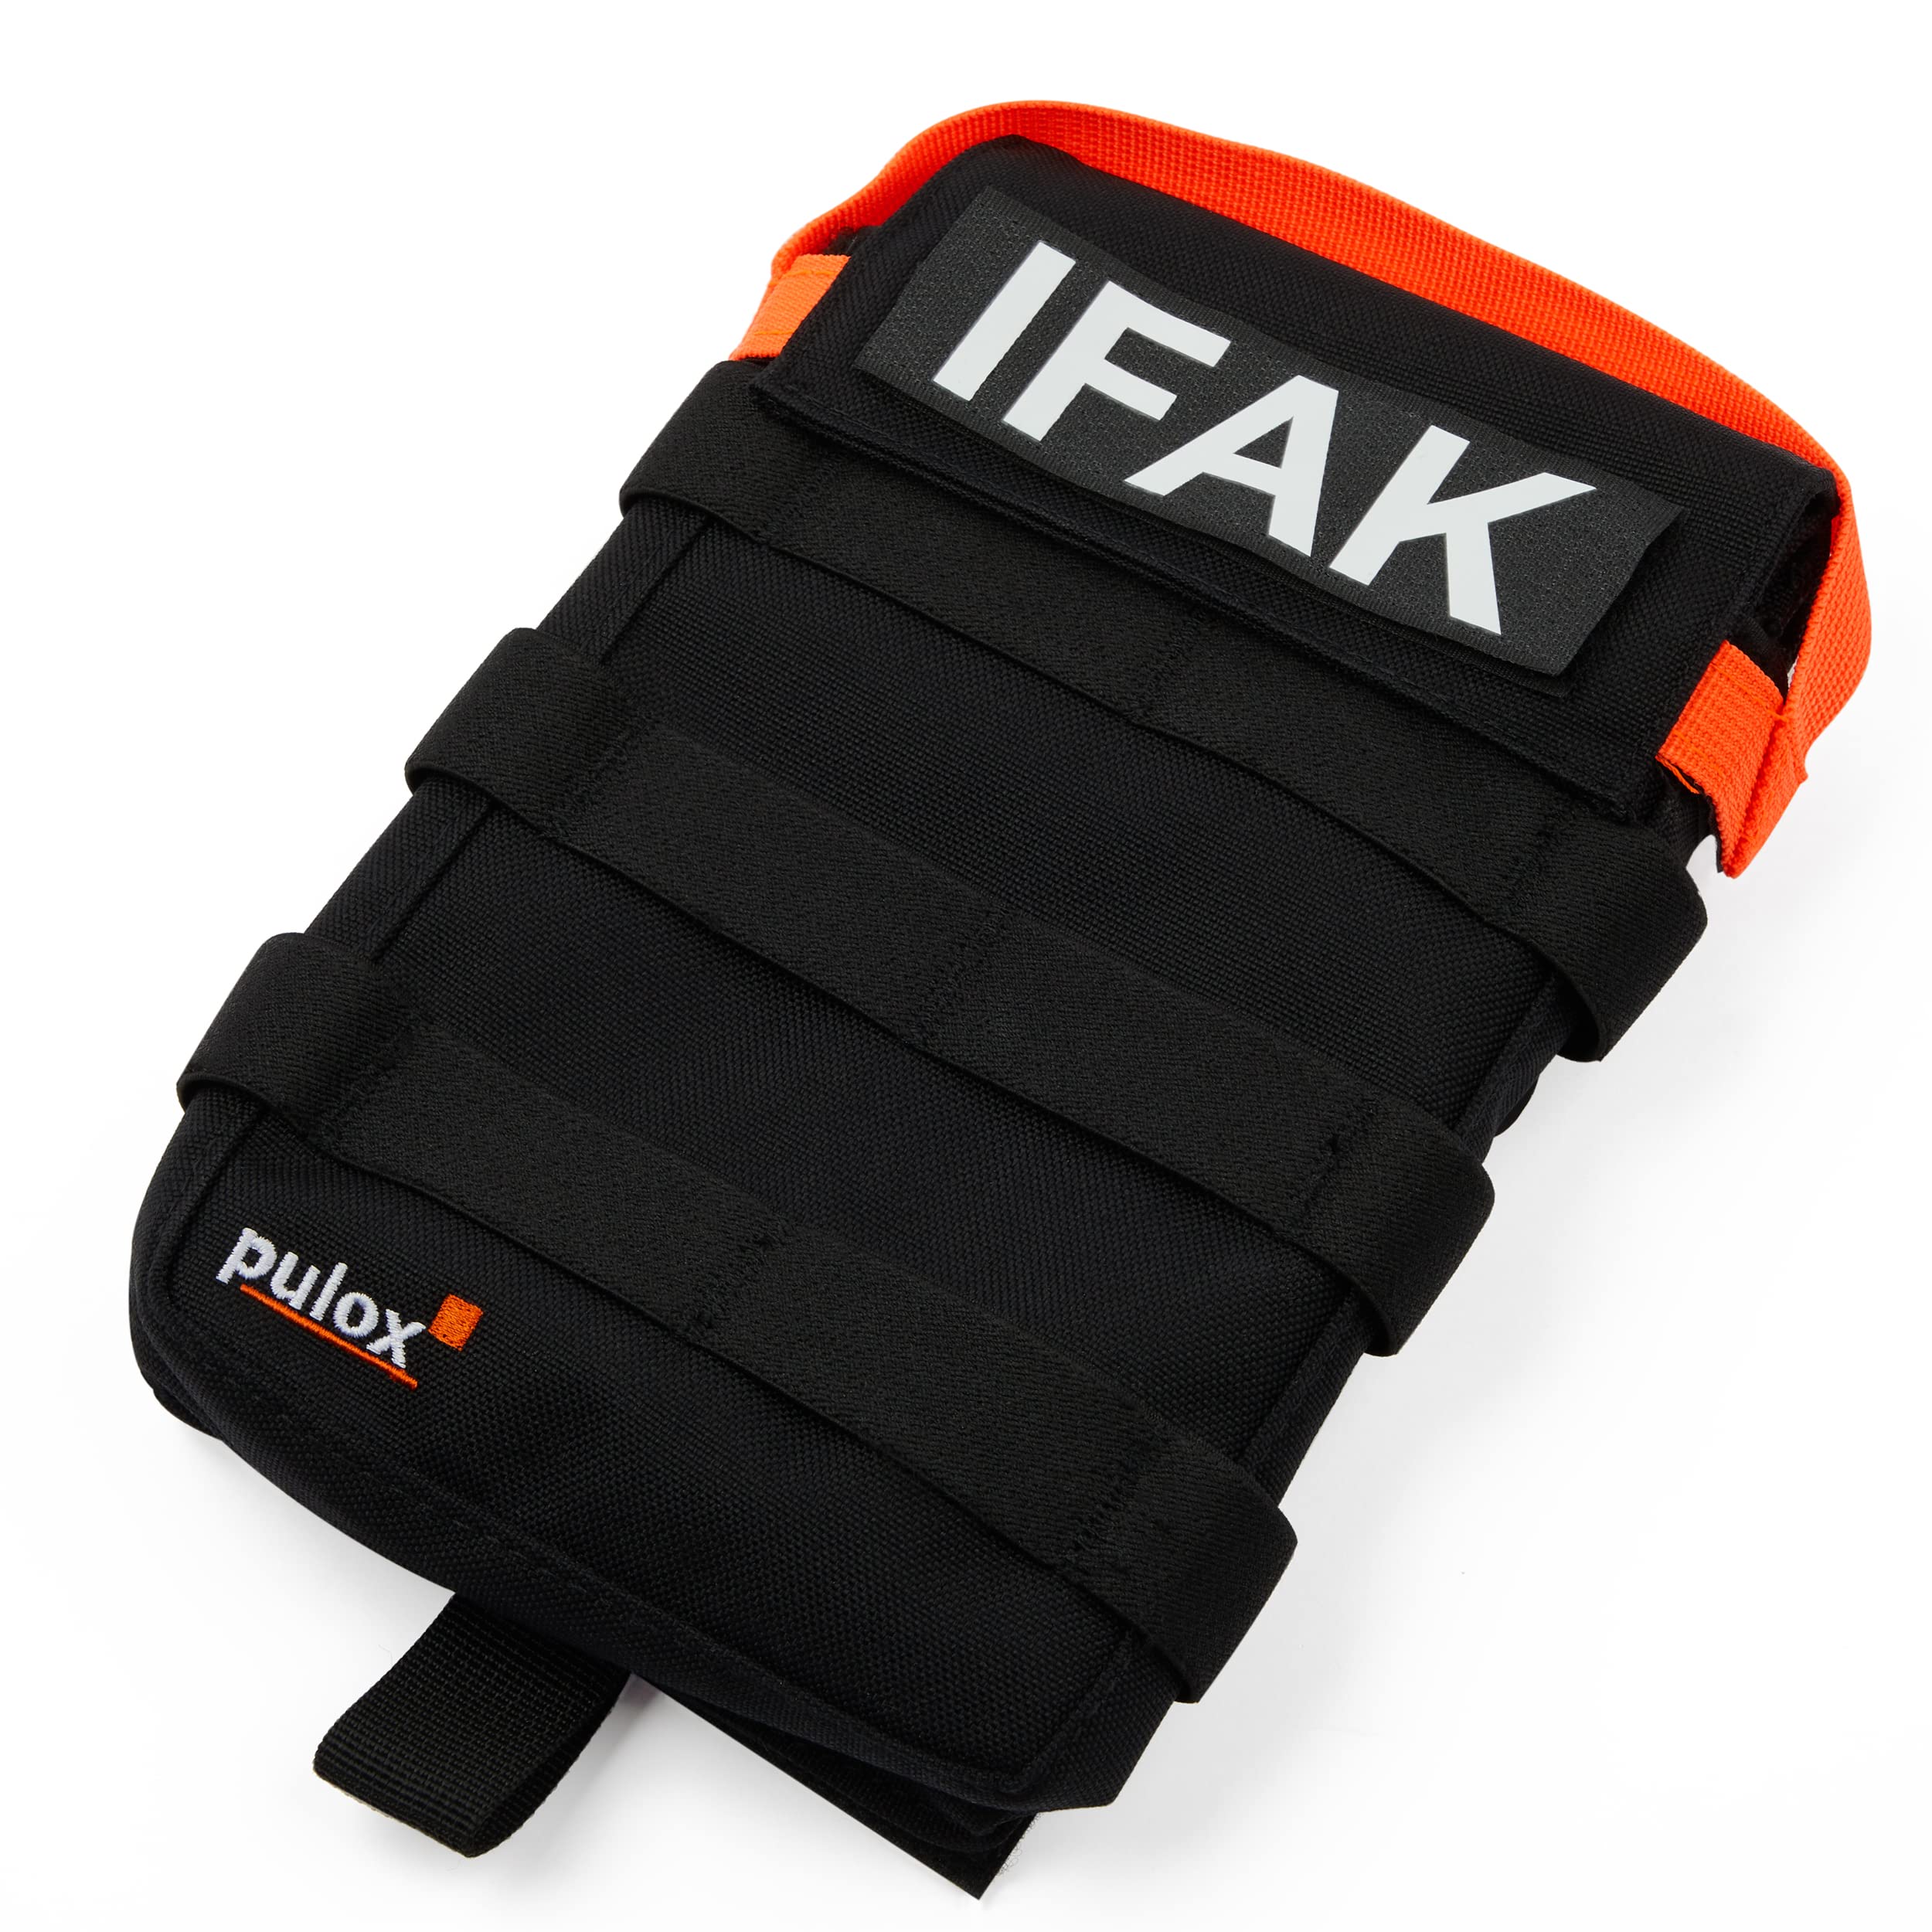 Pulox IFAK Tasche - Taktisches Erste Hilfe Kit kompatibel mit MOLLE-System - Medizinische Rip-Away Utensilientasche